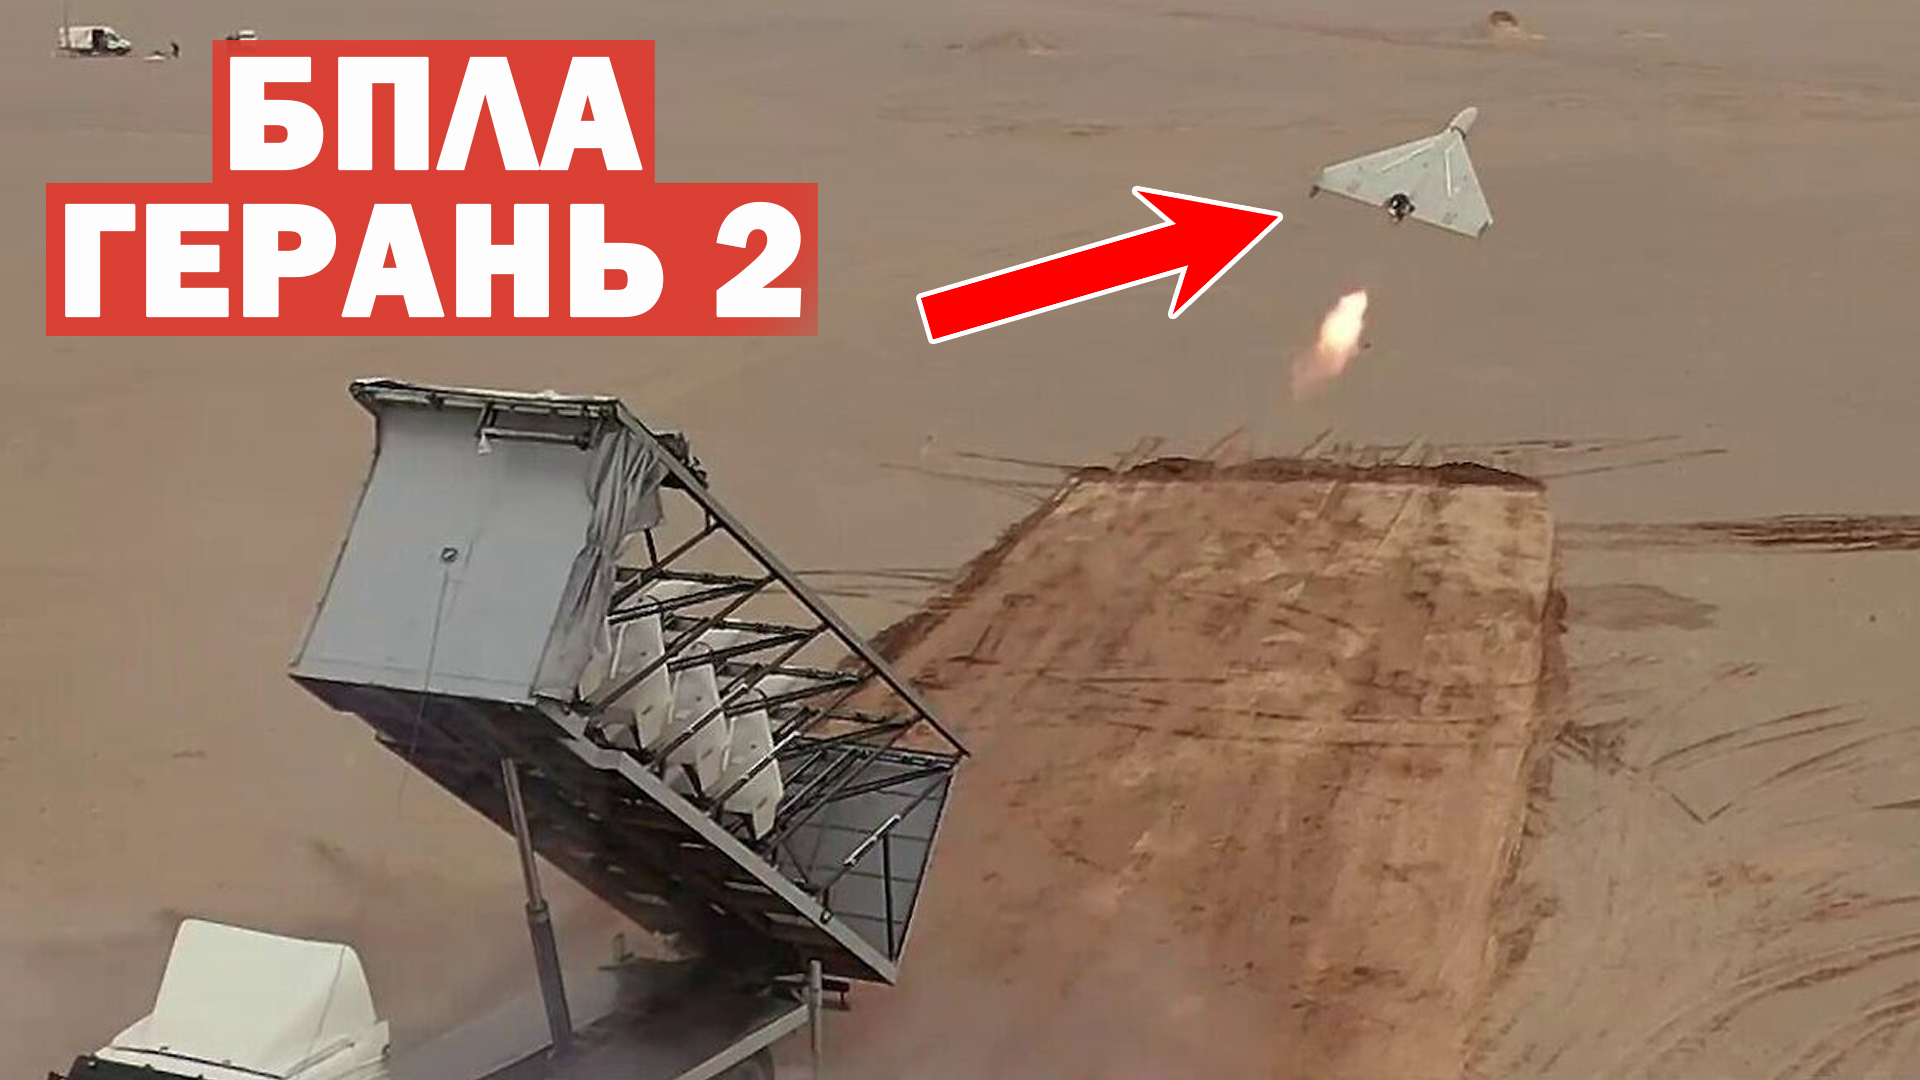 Британские специалисты вскрыли "Герань-2" и обомлели. То из чего состоит российский дрон, вызвало настоящий шок на Западе